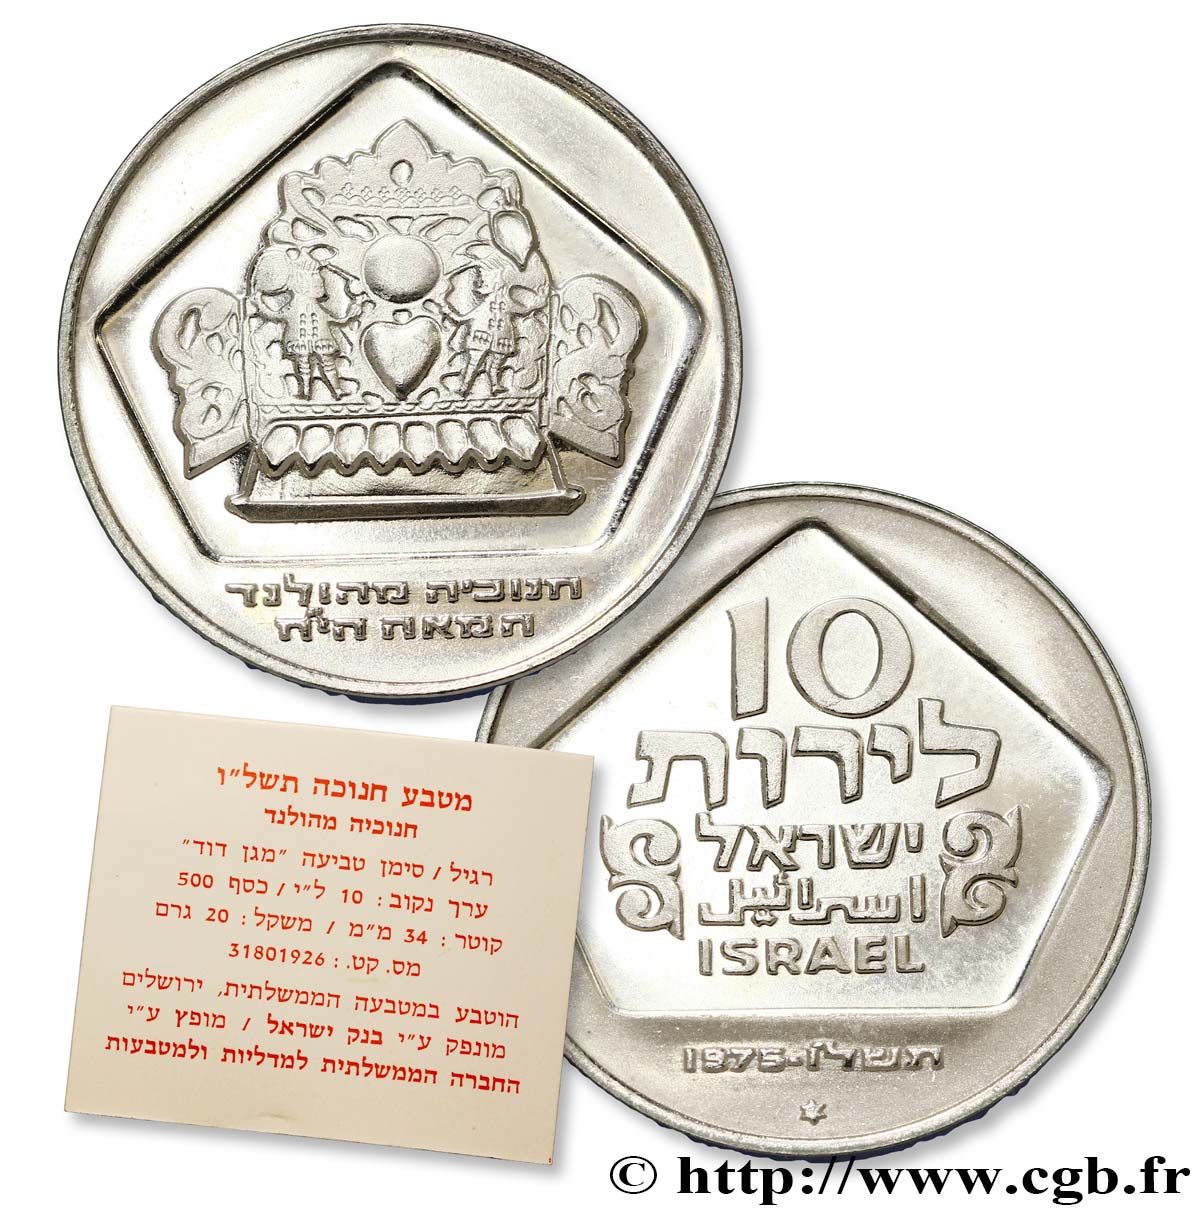 ISRAËL 10 Lirot Proof Hanukka Lampe de Hollande variété avec étoile de David 1975  FDC 